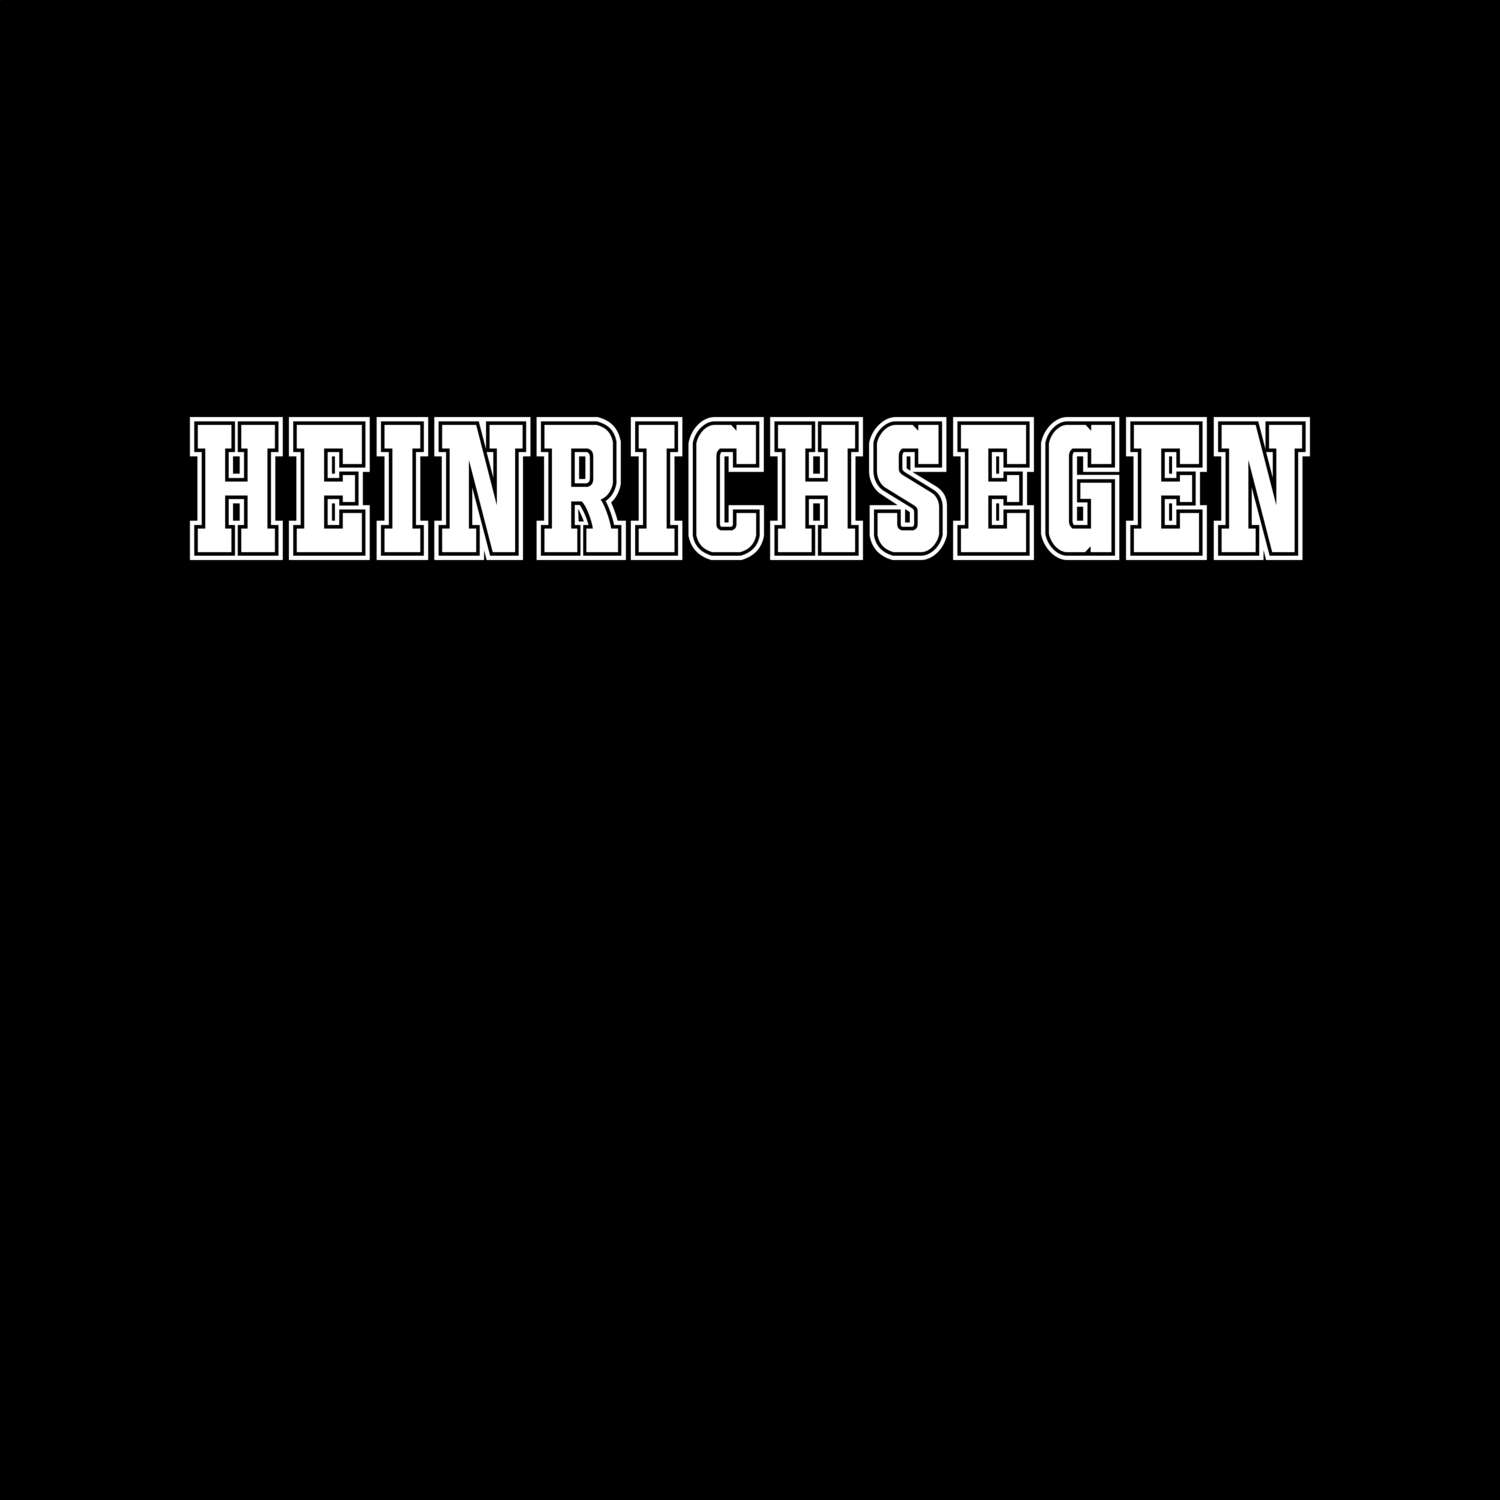 Heinrichsegen T-Shirt »Classic«